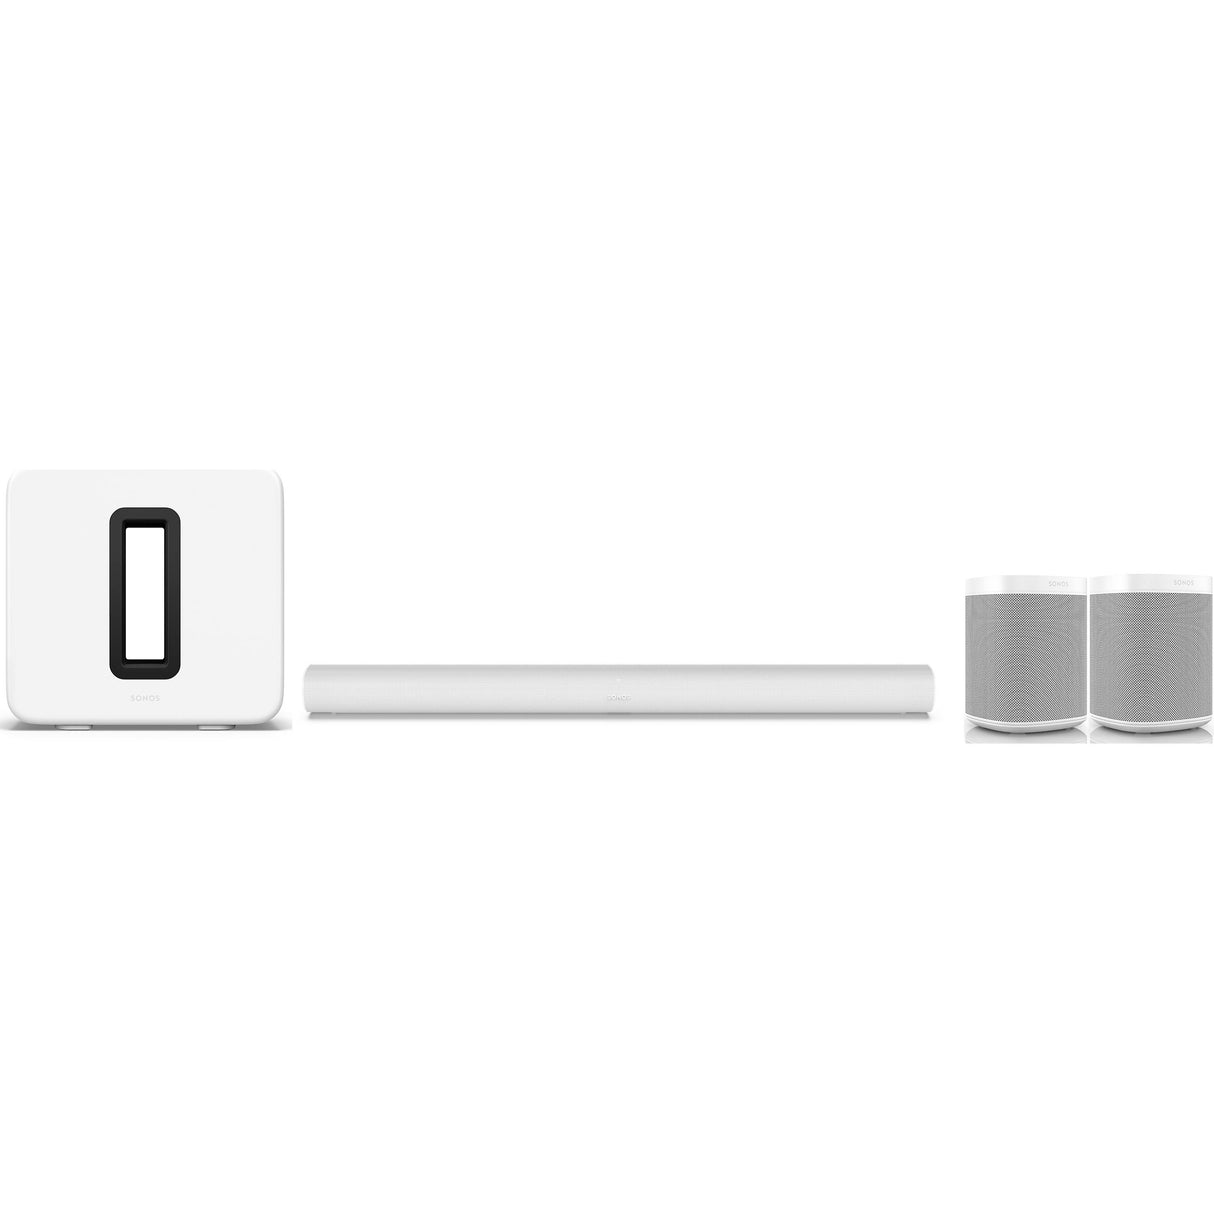 Sonos Arc 5.1 Wireless Home Theater Bundle - Sonos Arc + Gen-3 Sub + Sonos One SL (White)